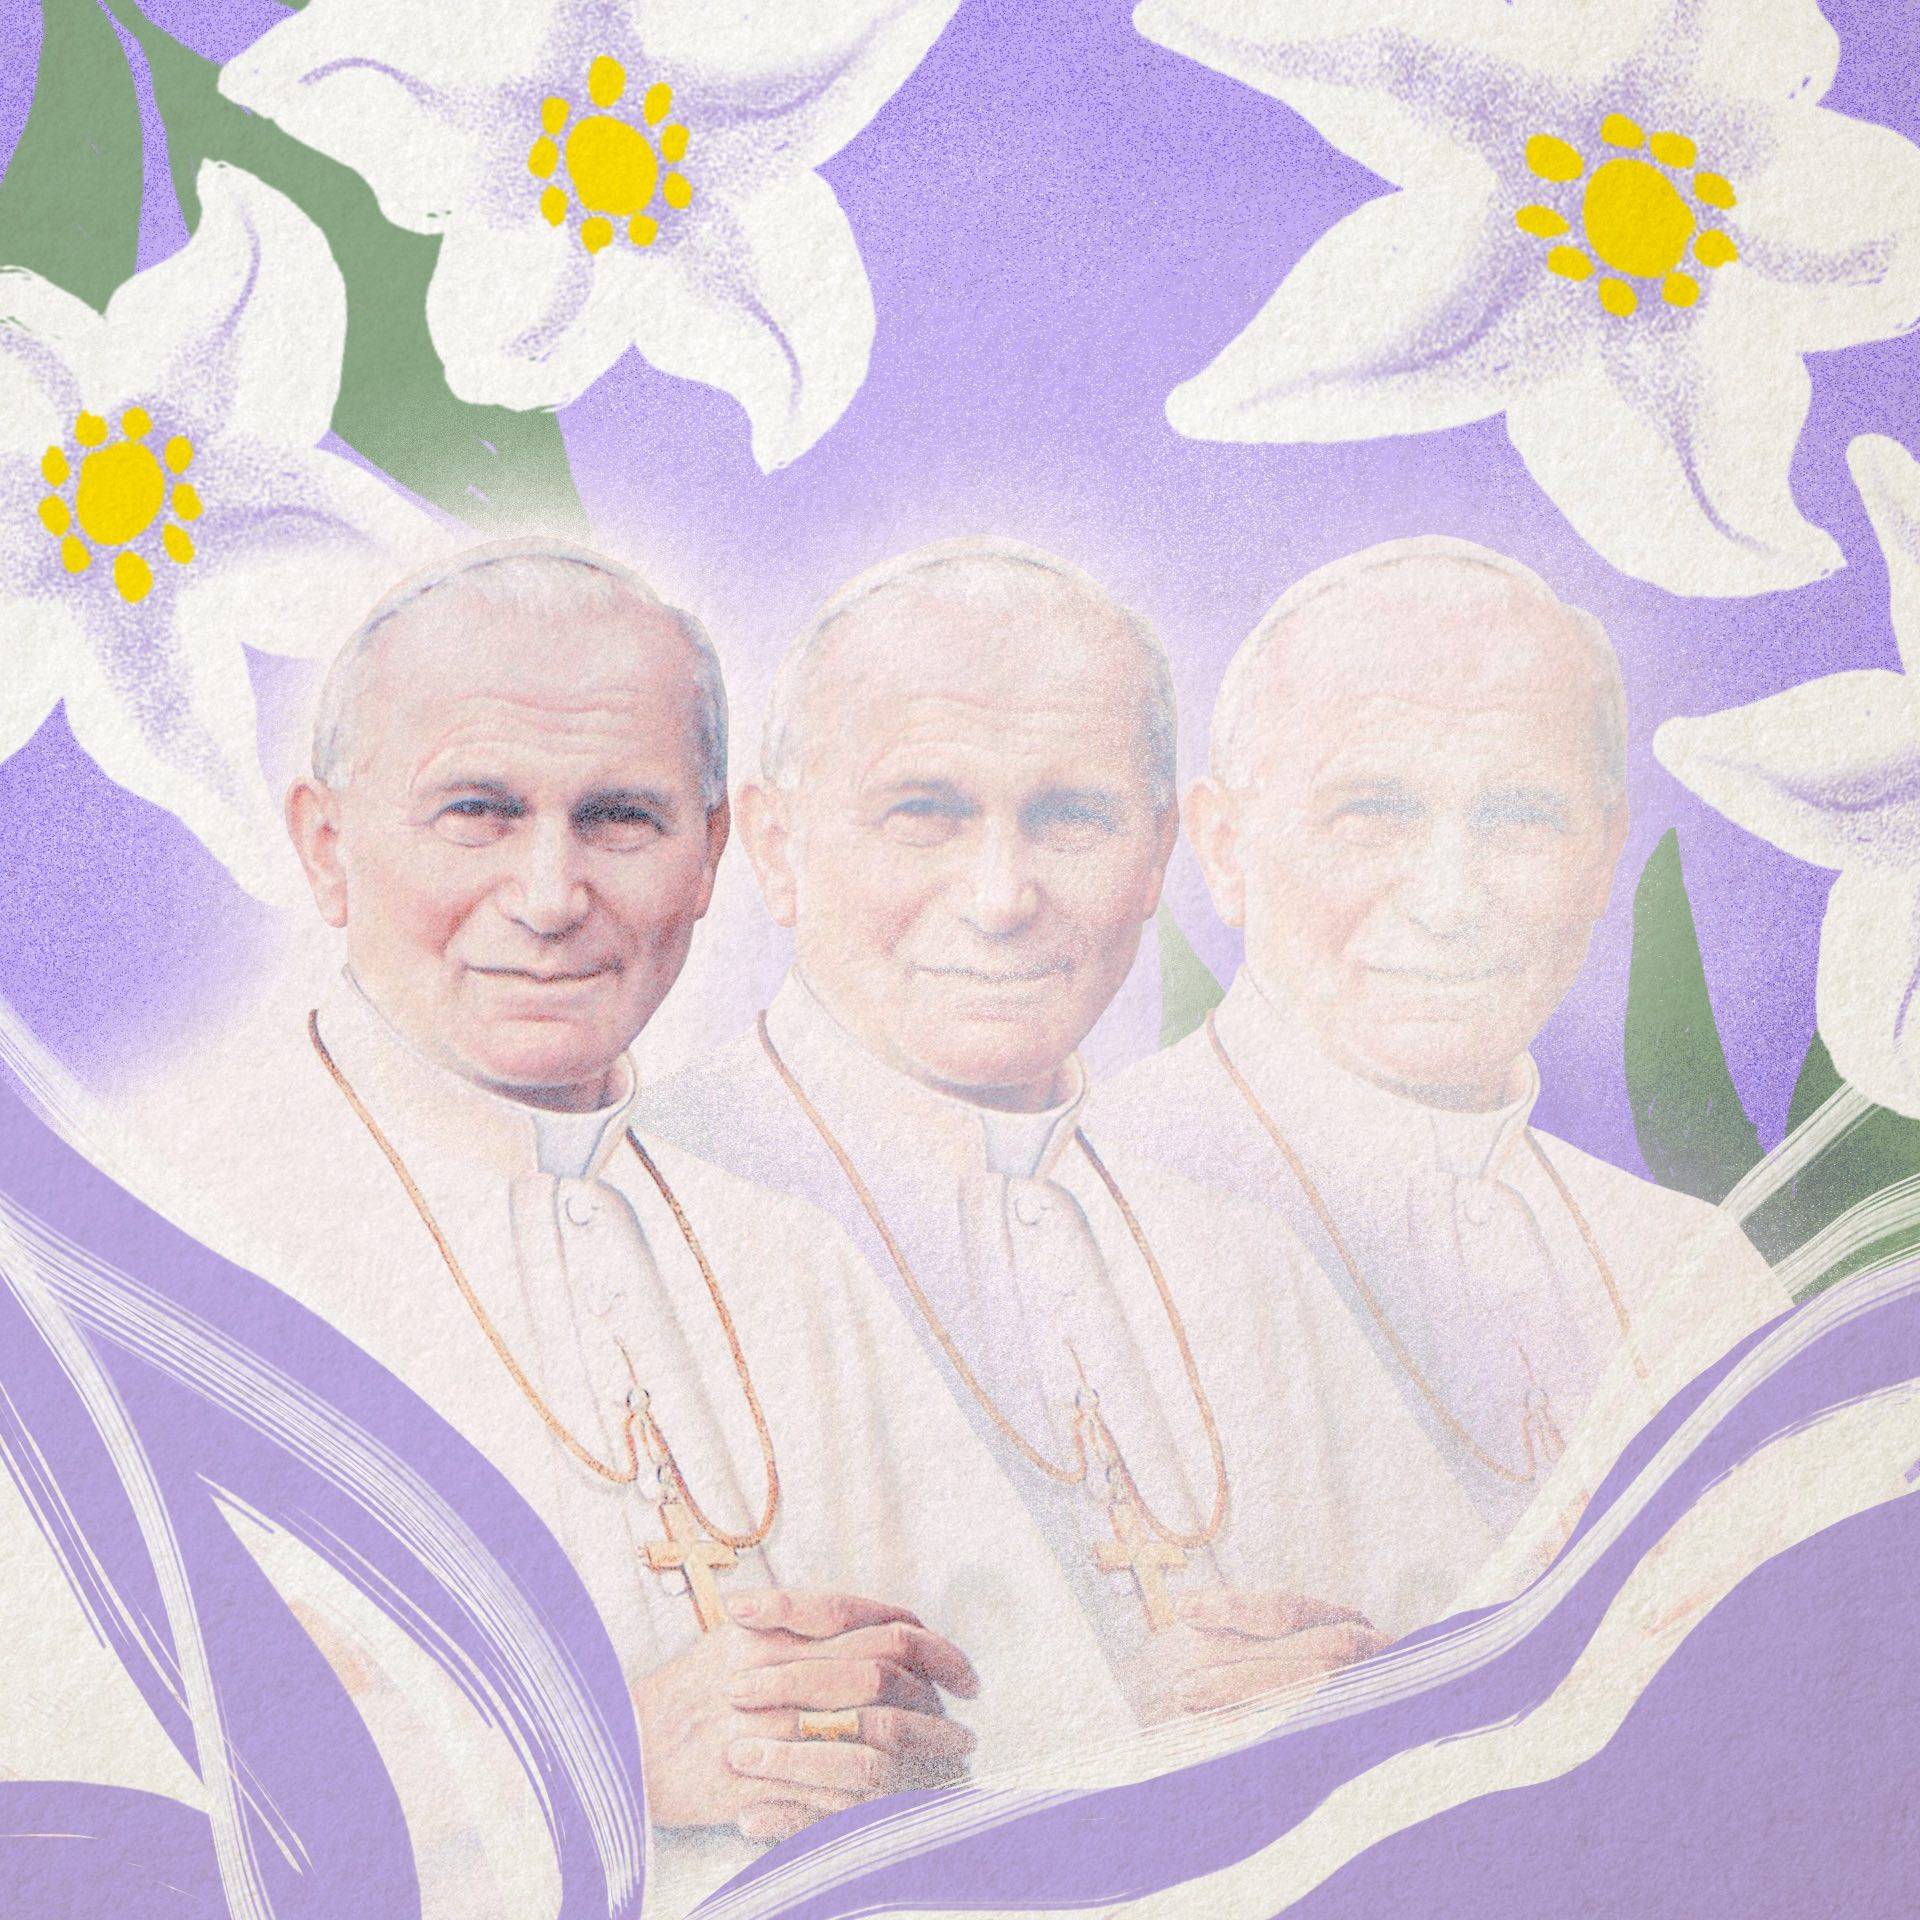 Ilustracja przedstawiająca zwielokrotniony portret Jana Pawła II w otoczeniu kwiatów, który blaknie.